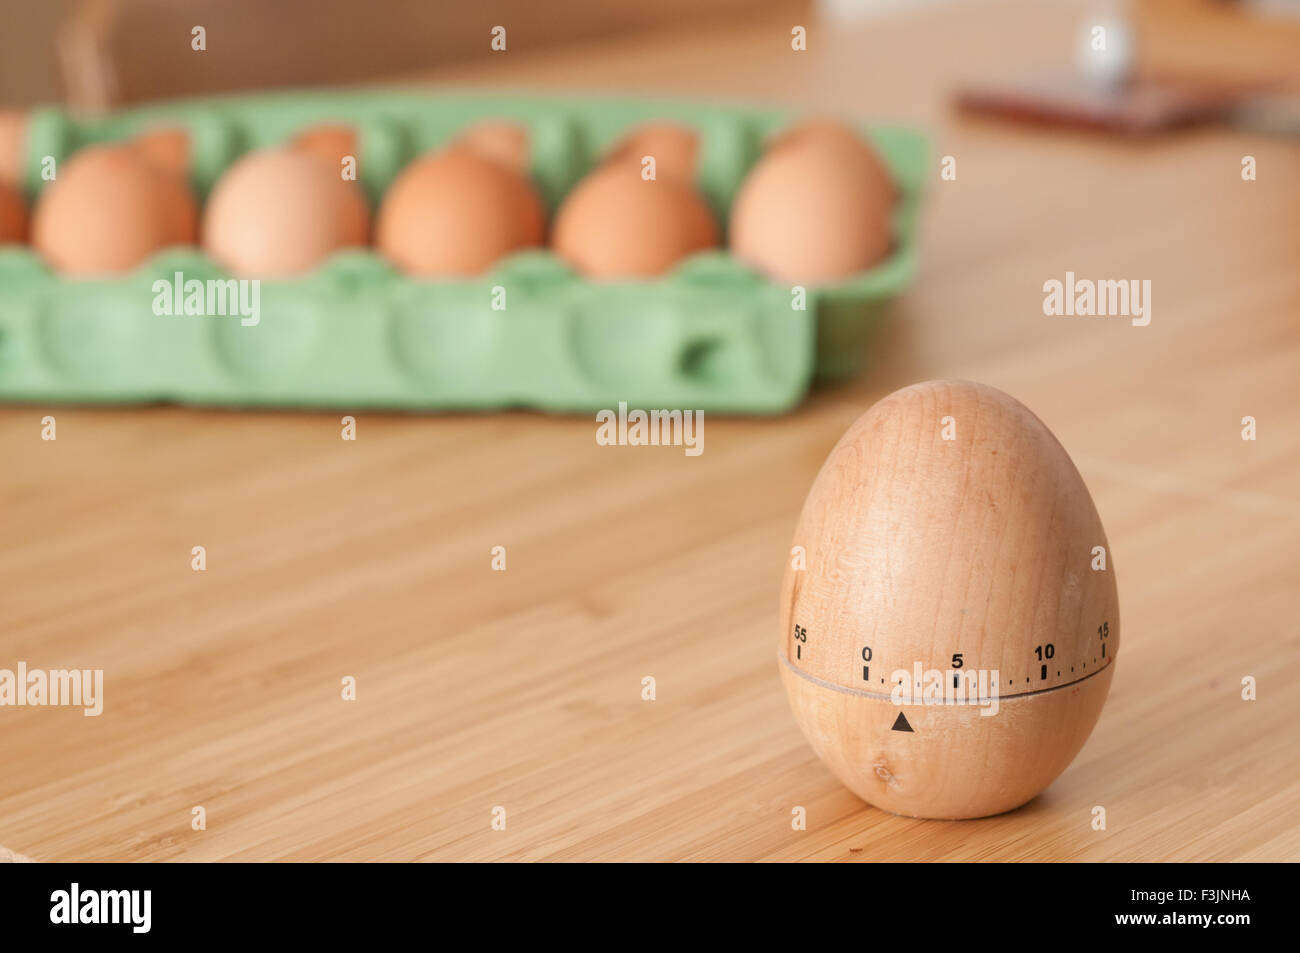 Eieruhr mit einem Karton von frischen Eiern im Hintergrund Stockfoto